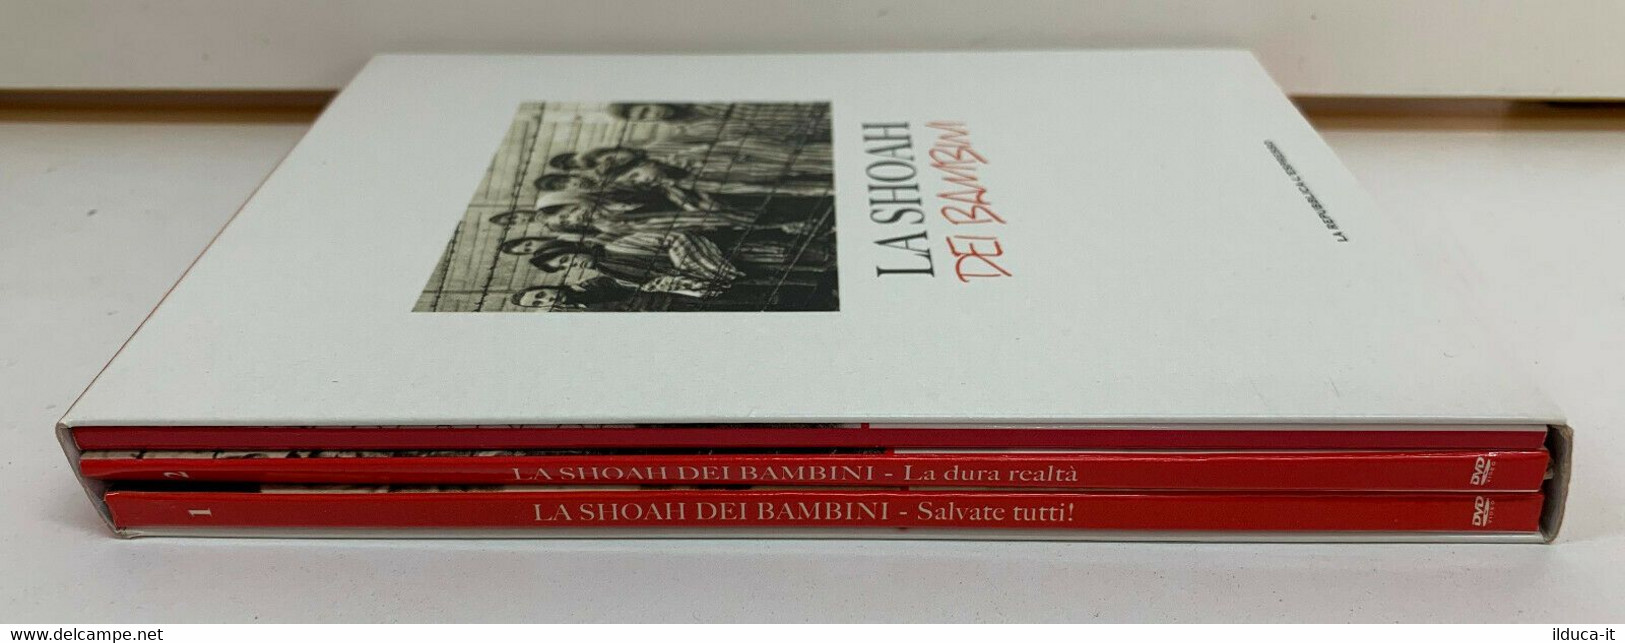 01657 DVD Cofanetto (2 Dischi + Libri) - LA SHOAH DEI BAMBINI - Repubblica - Documentaires